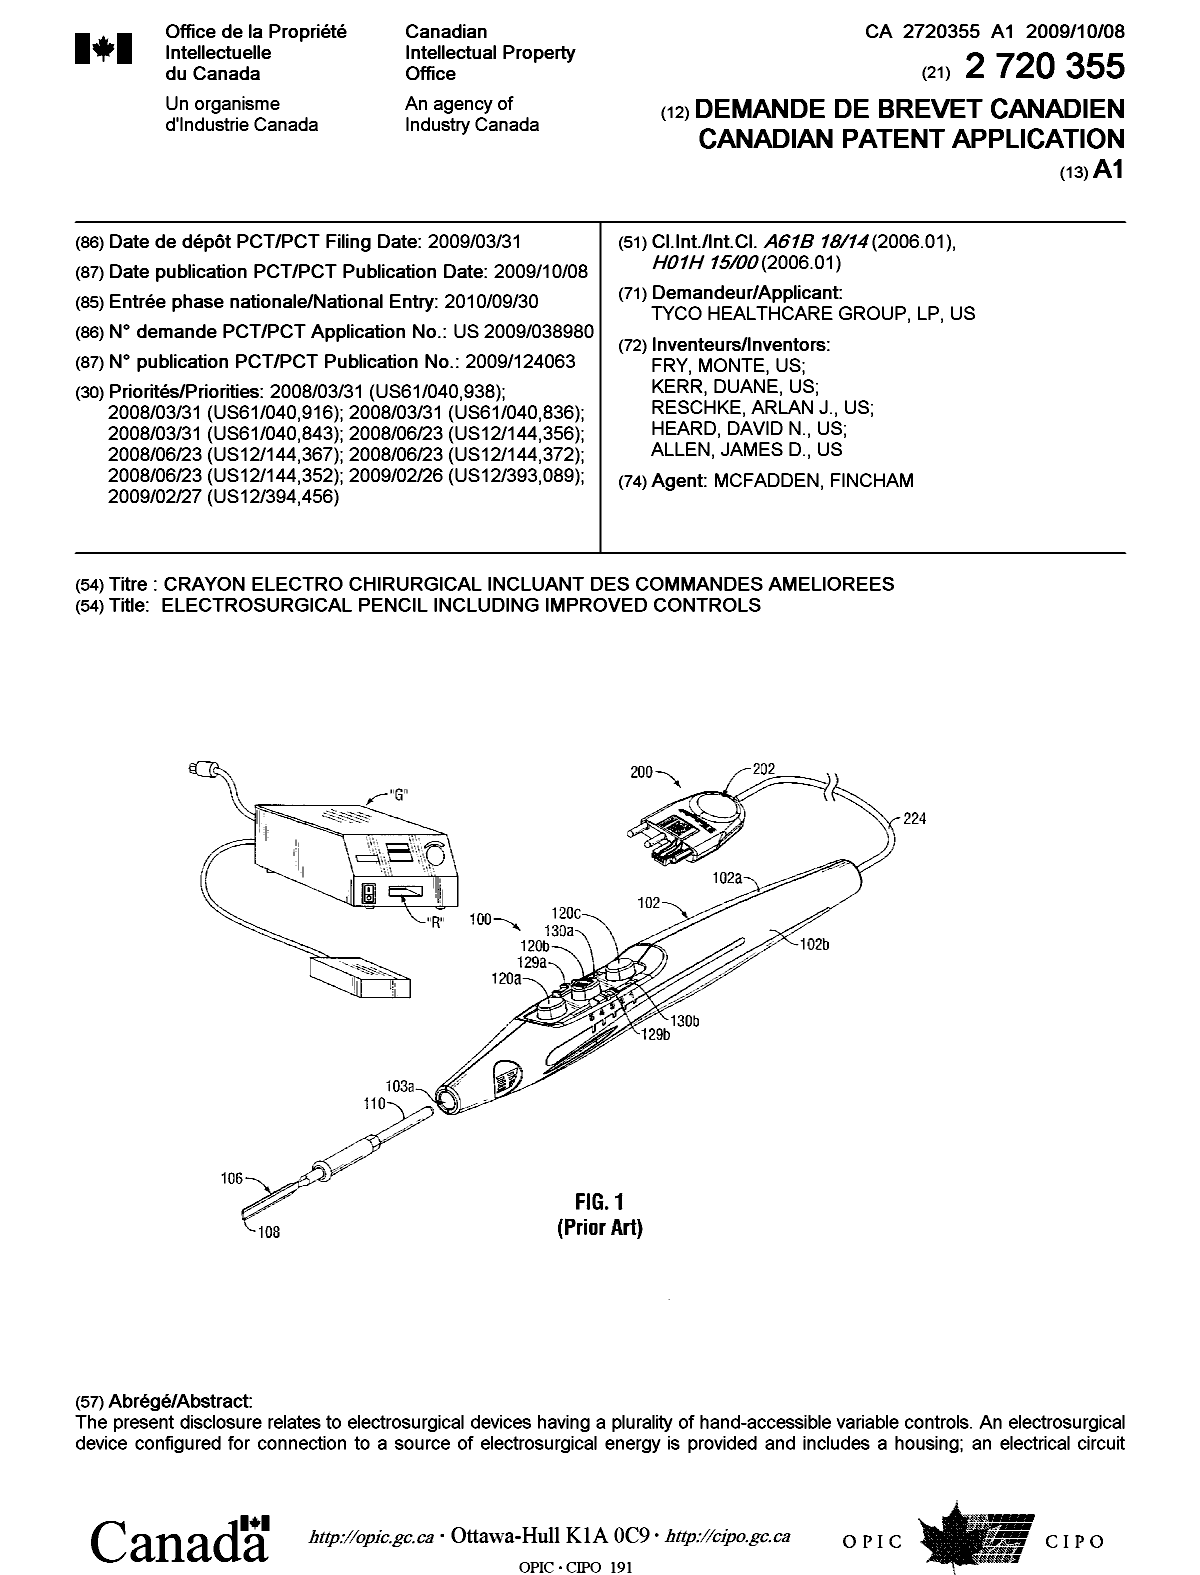 Document de brevet canadien 2720355. Page couverture 20110104. Image 1 de 2